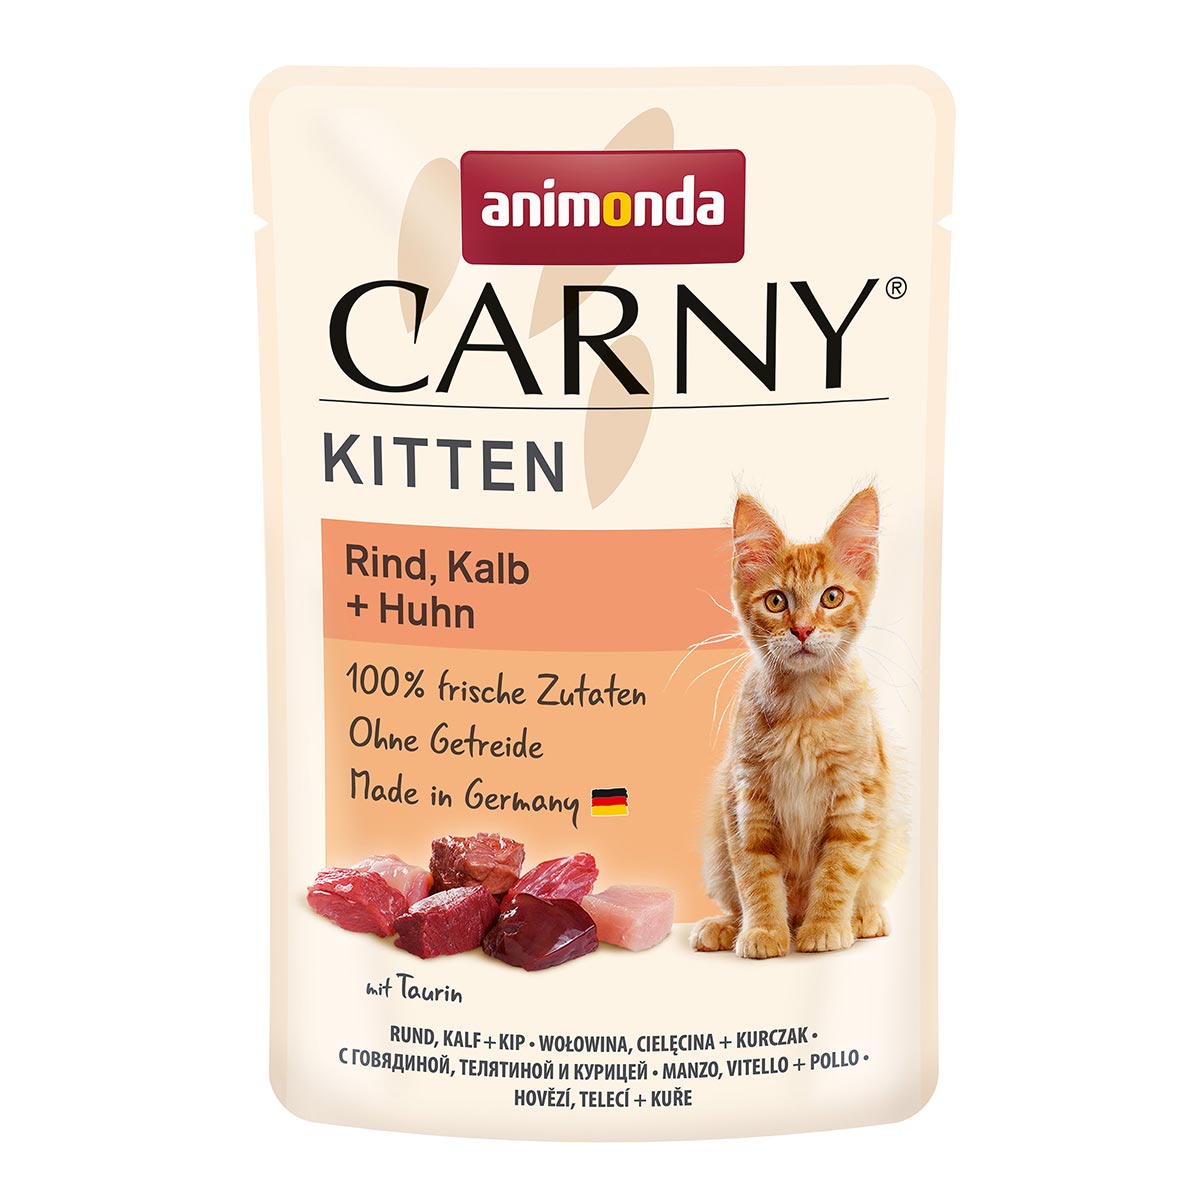 animonda Carny Kitten Rind, Kalb + Huhn 12x85g von animonda Carny